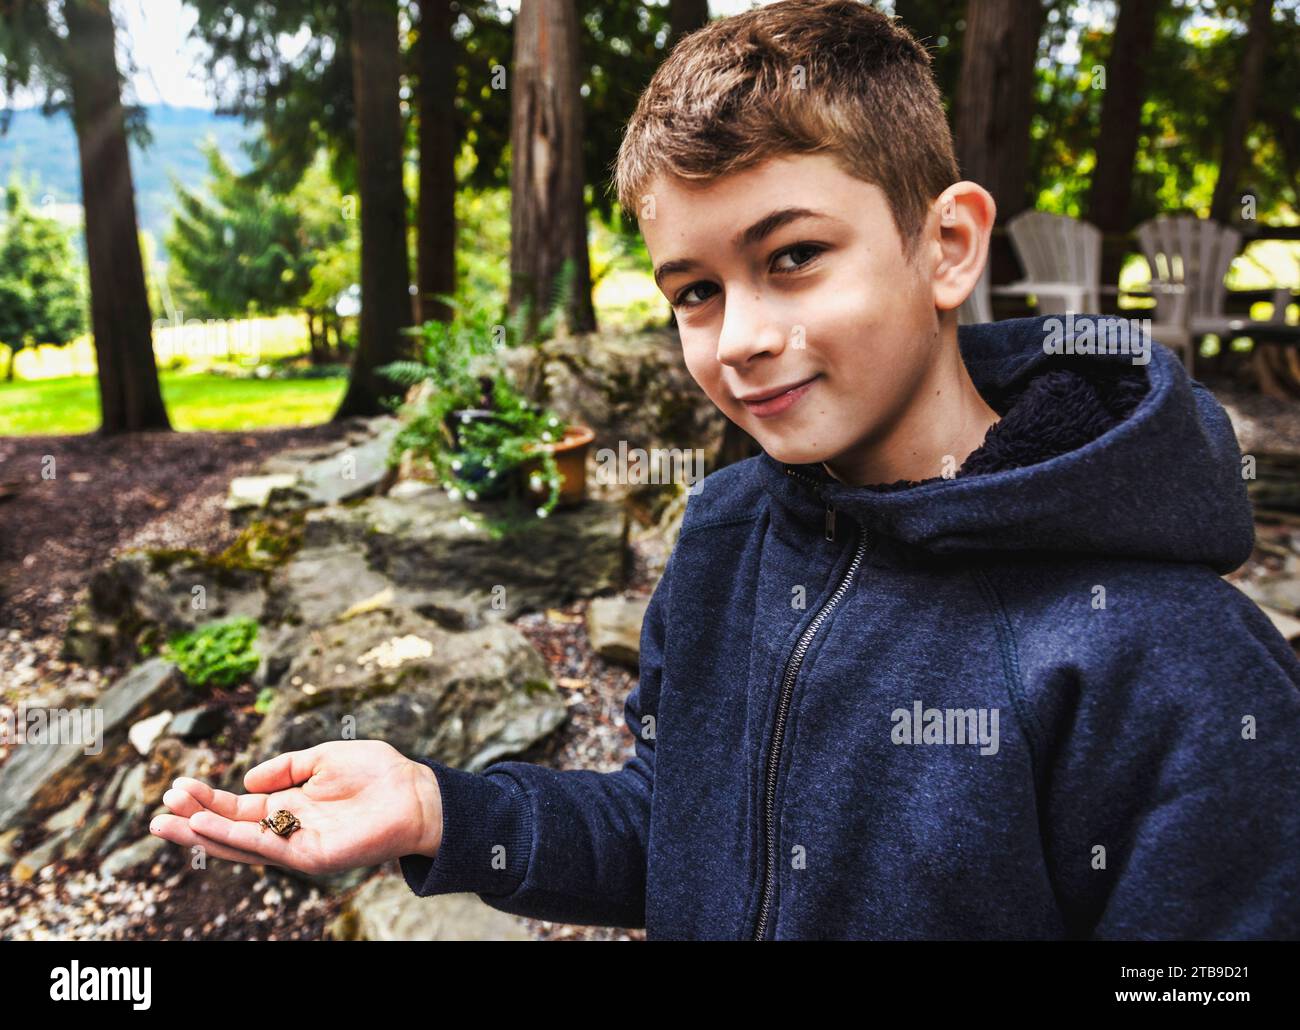 Ritratto ravvicinato di un ragazzo sorridente alla macchina fotografica e che tiene in mano una rana mentre è in vacanza; Sicamous, British Columbia, Canada Foto Stock